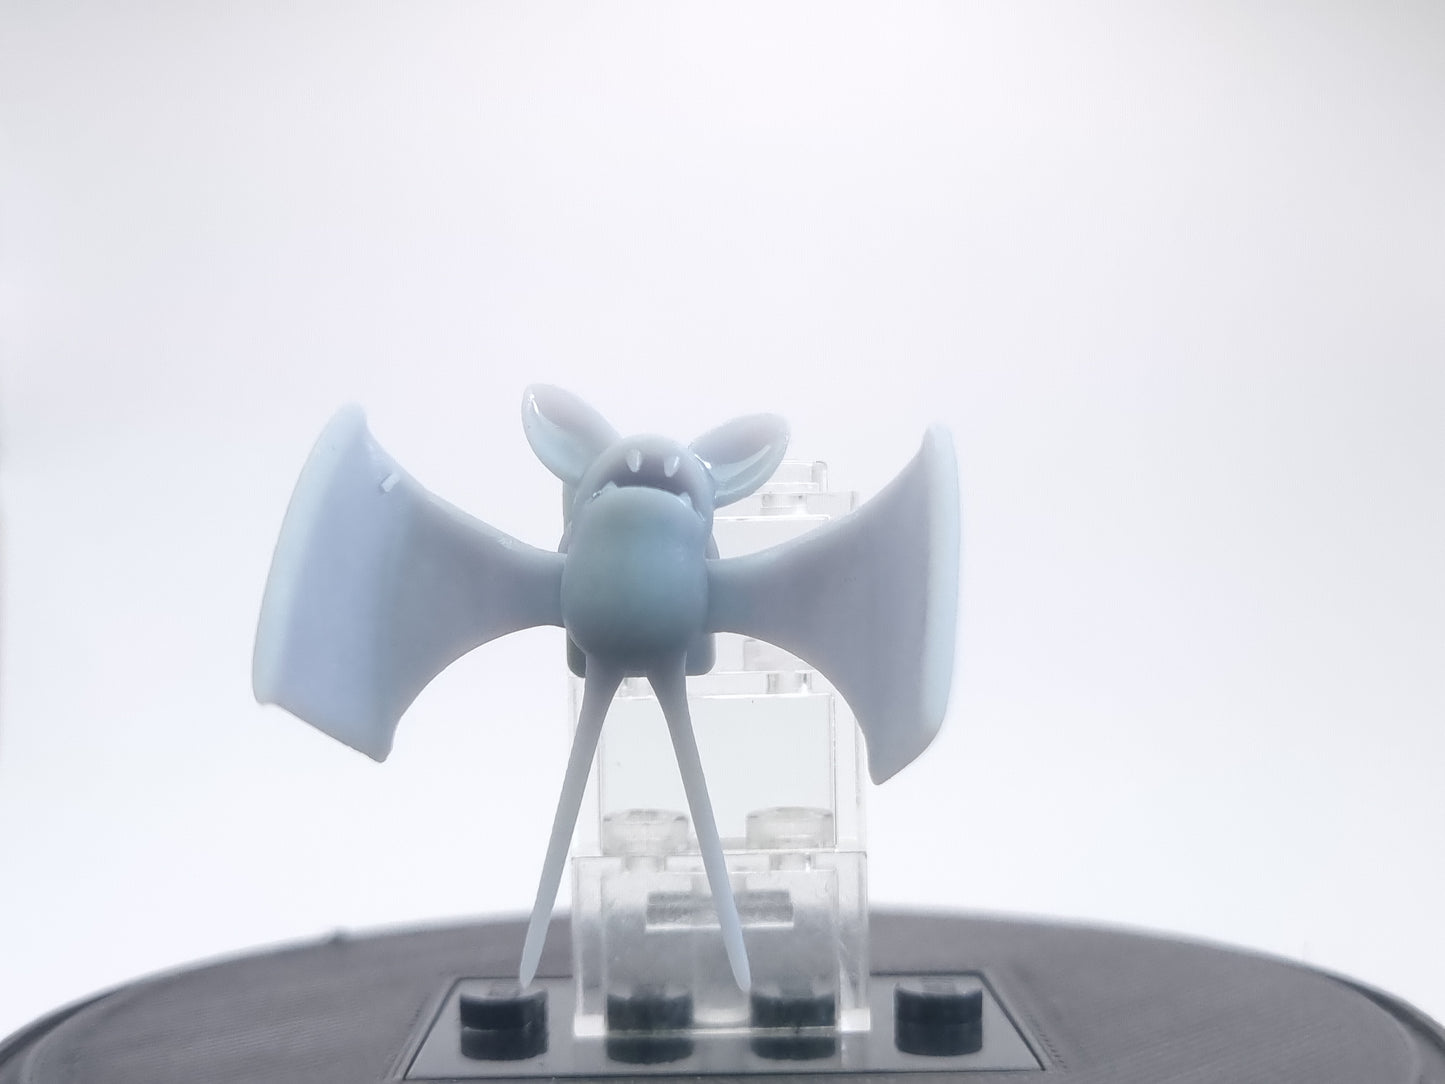 lego compatible 3D printed bat!